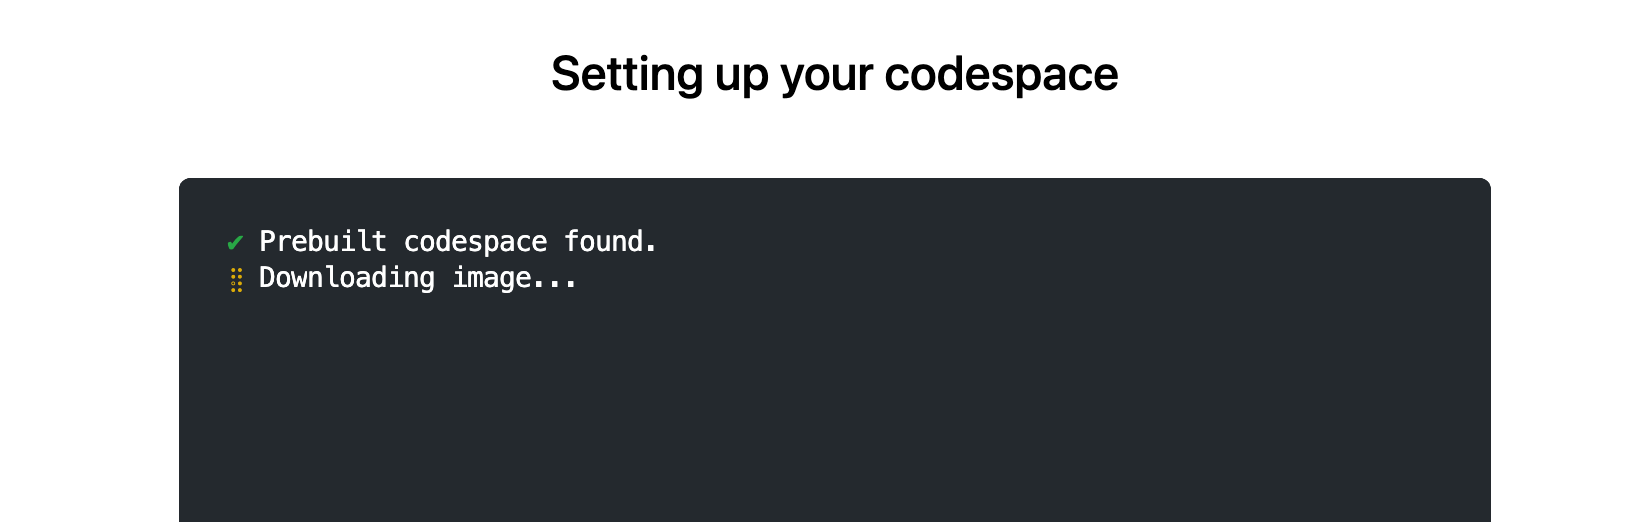 [codespace の設定] ページのスクリーンショット。次のテキストが含まれます: "プレビルド codespace が見つかりました。 イメージをダウンロードしています。"